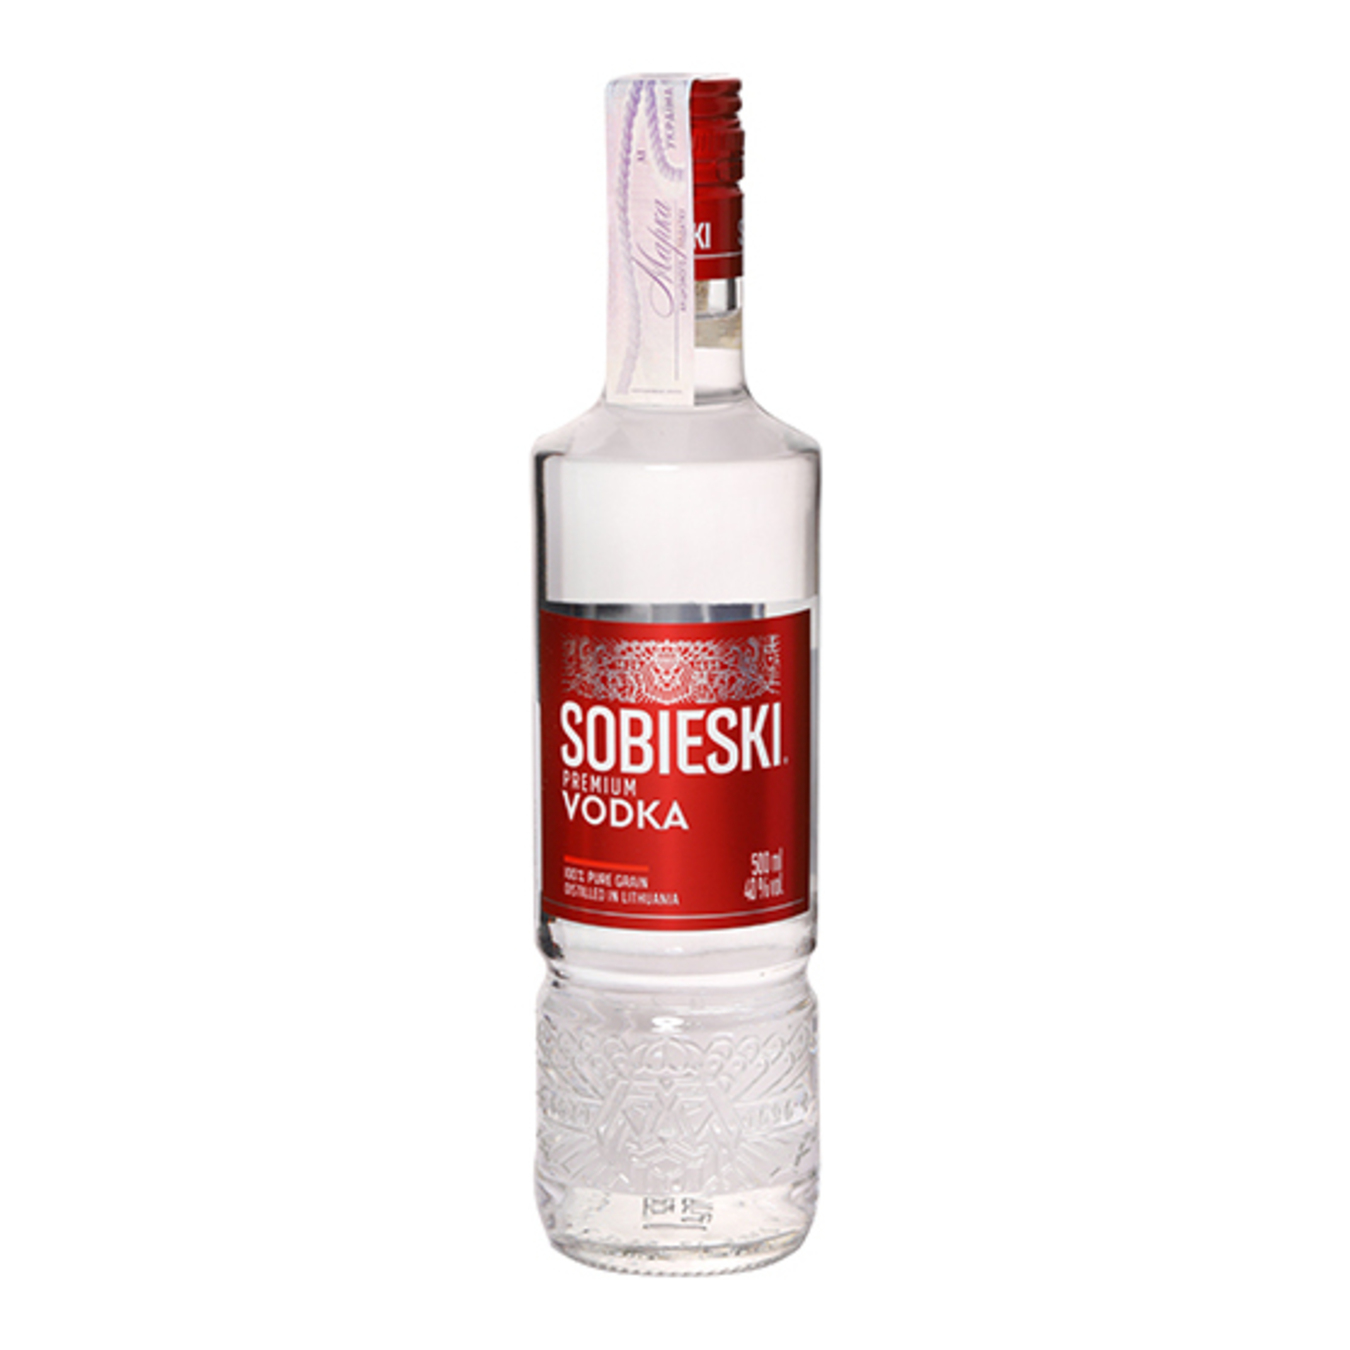 Sobieski Premium vodka 40% 0,5l